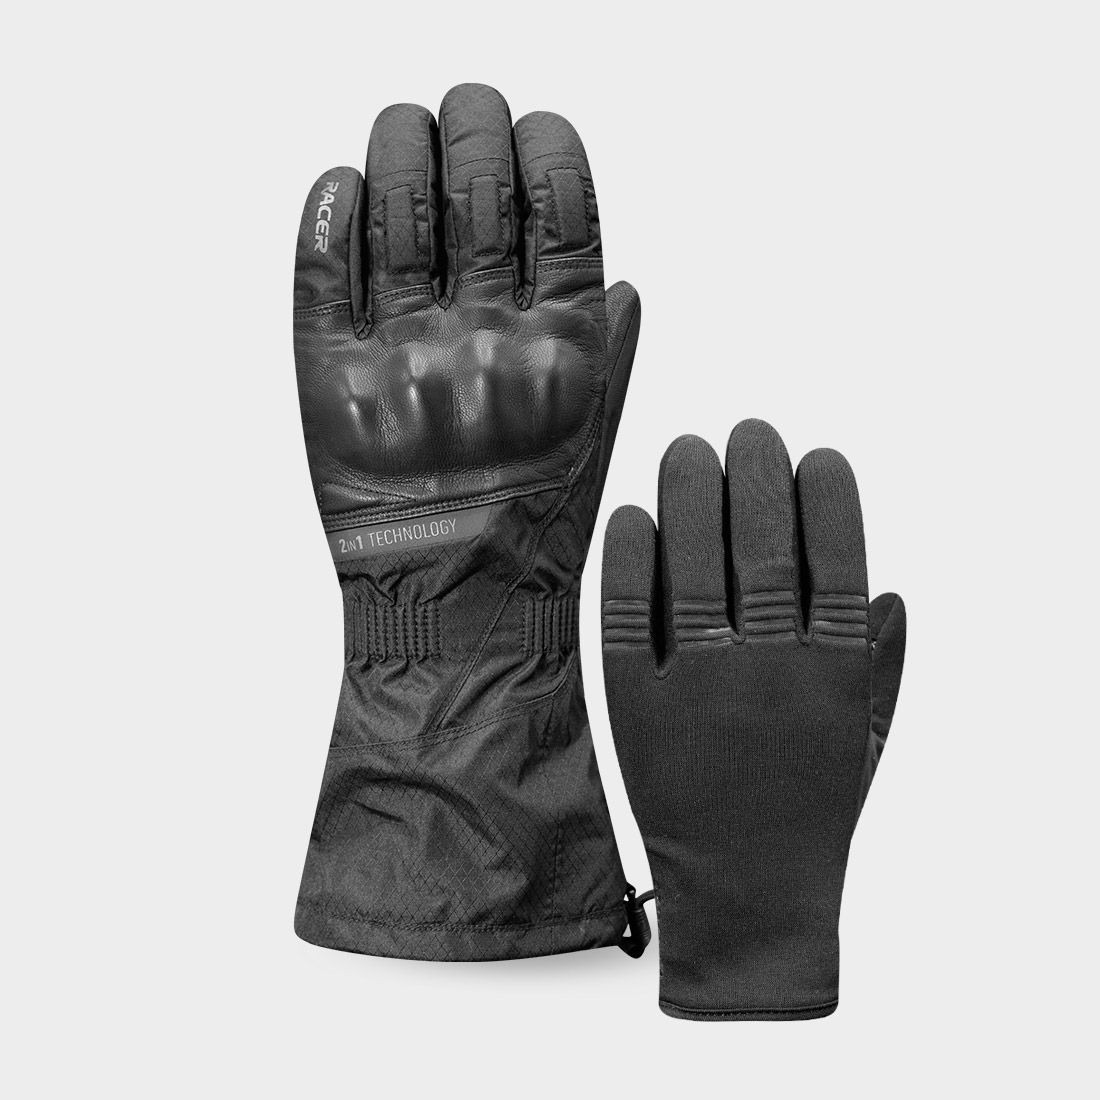 gloves SIBERY 2-1, RACER (black)